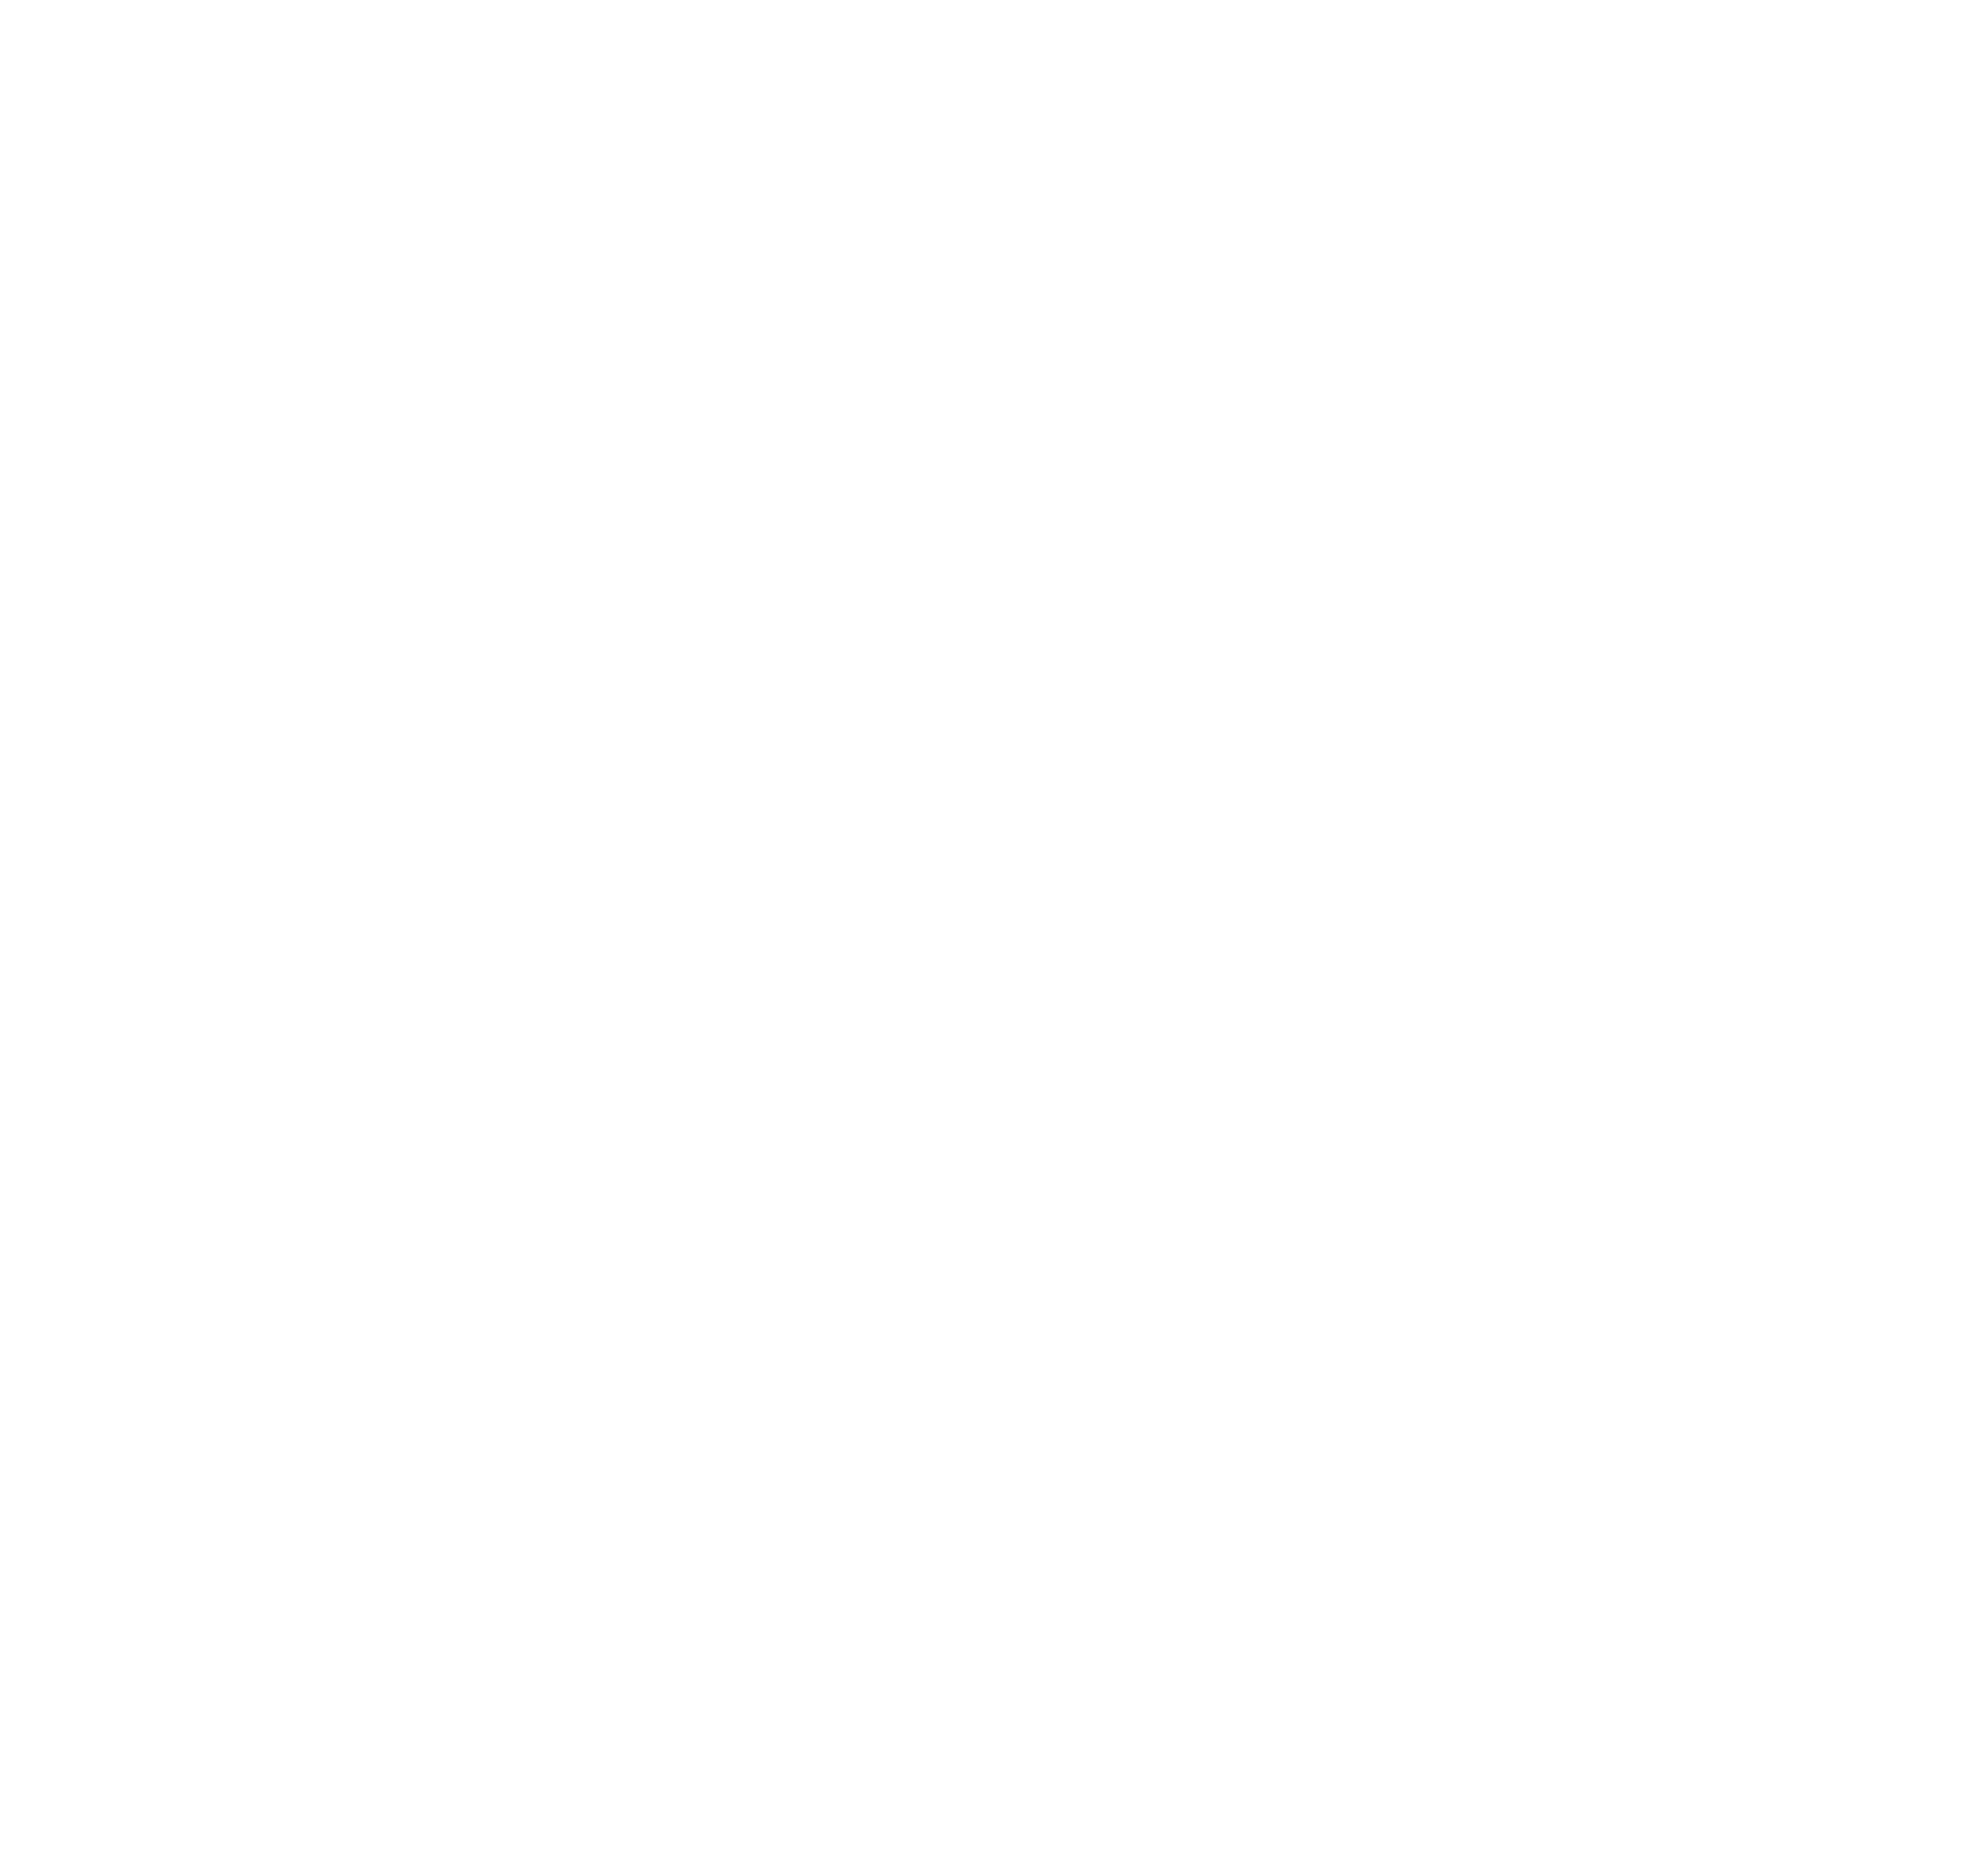 Images cosmos restaurant & astro bar Corralejo